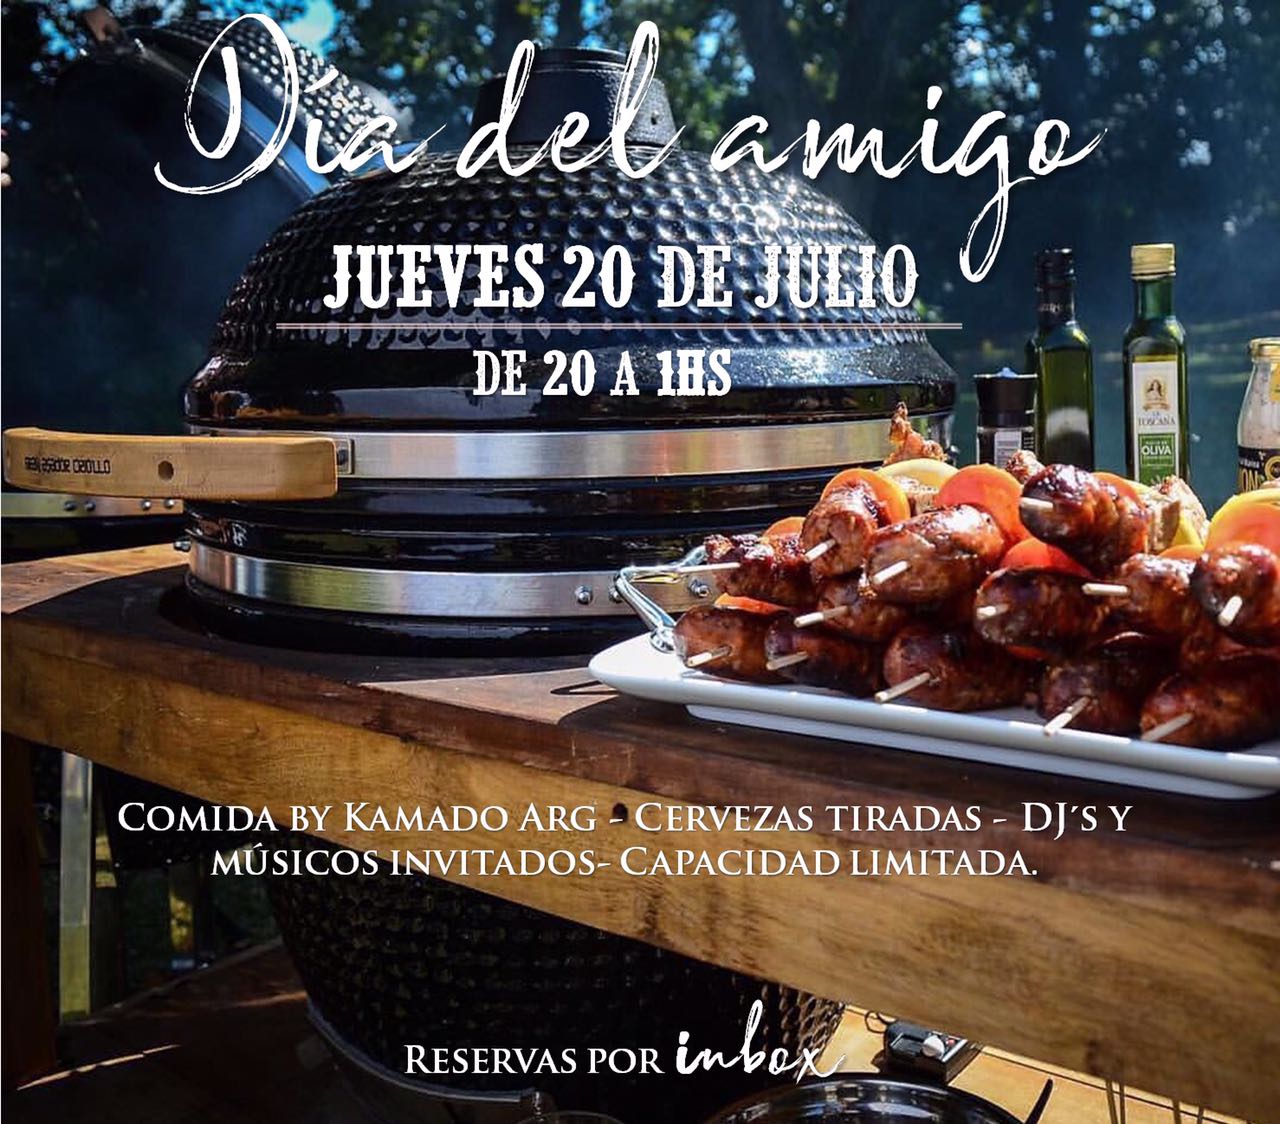 Primer Restaurante en Utilizar Kamado Argentino en Patagonia